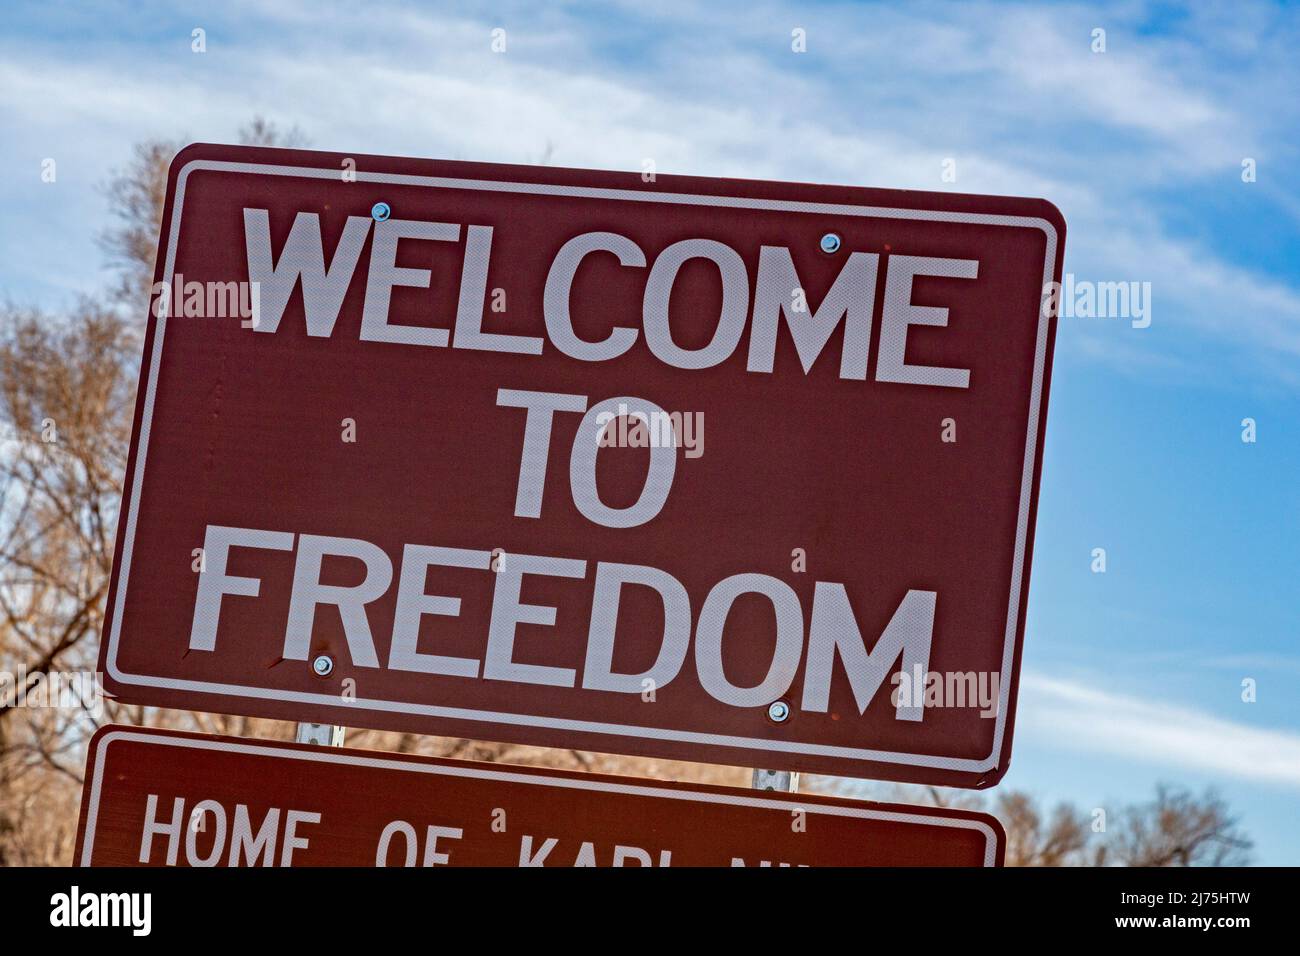 Freedom, Oklahoma - Un panneau routier aux limites de la ville de Freedom, une petite ville de l'ouest de l'Oklahoma. Banque D'Images